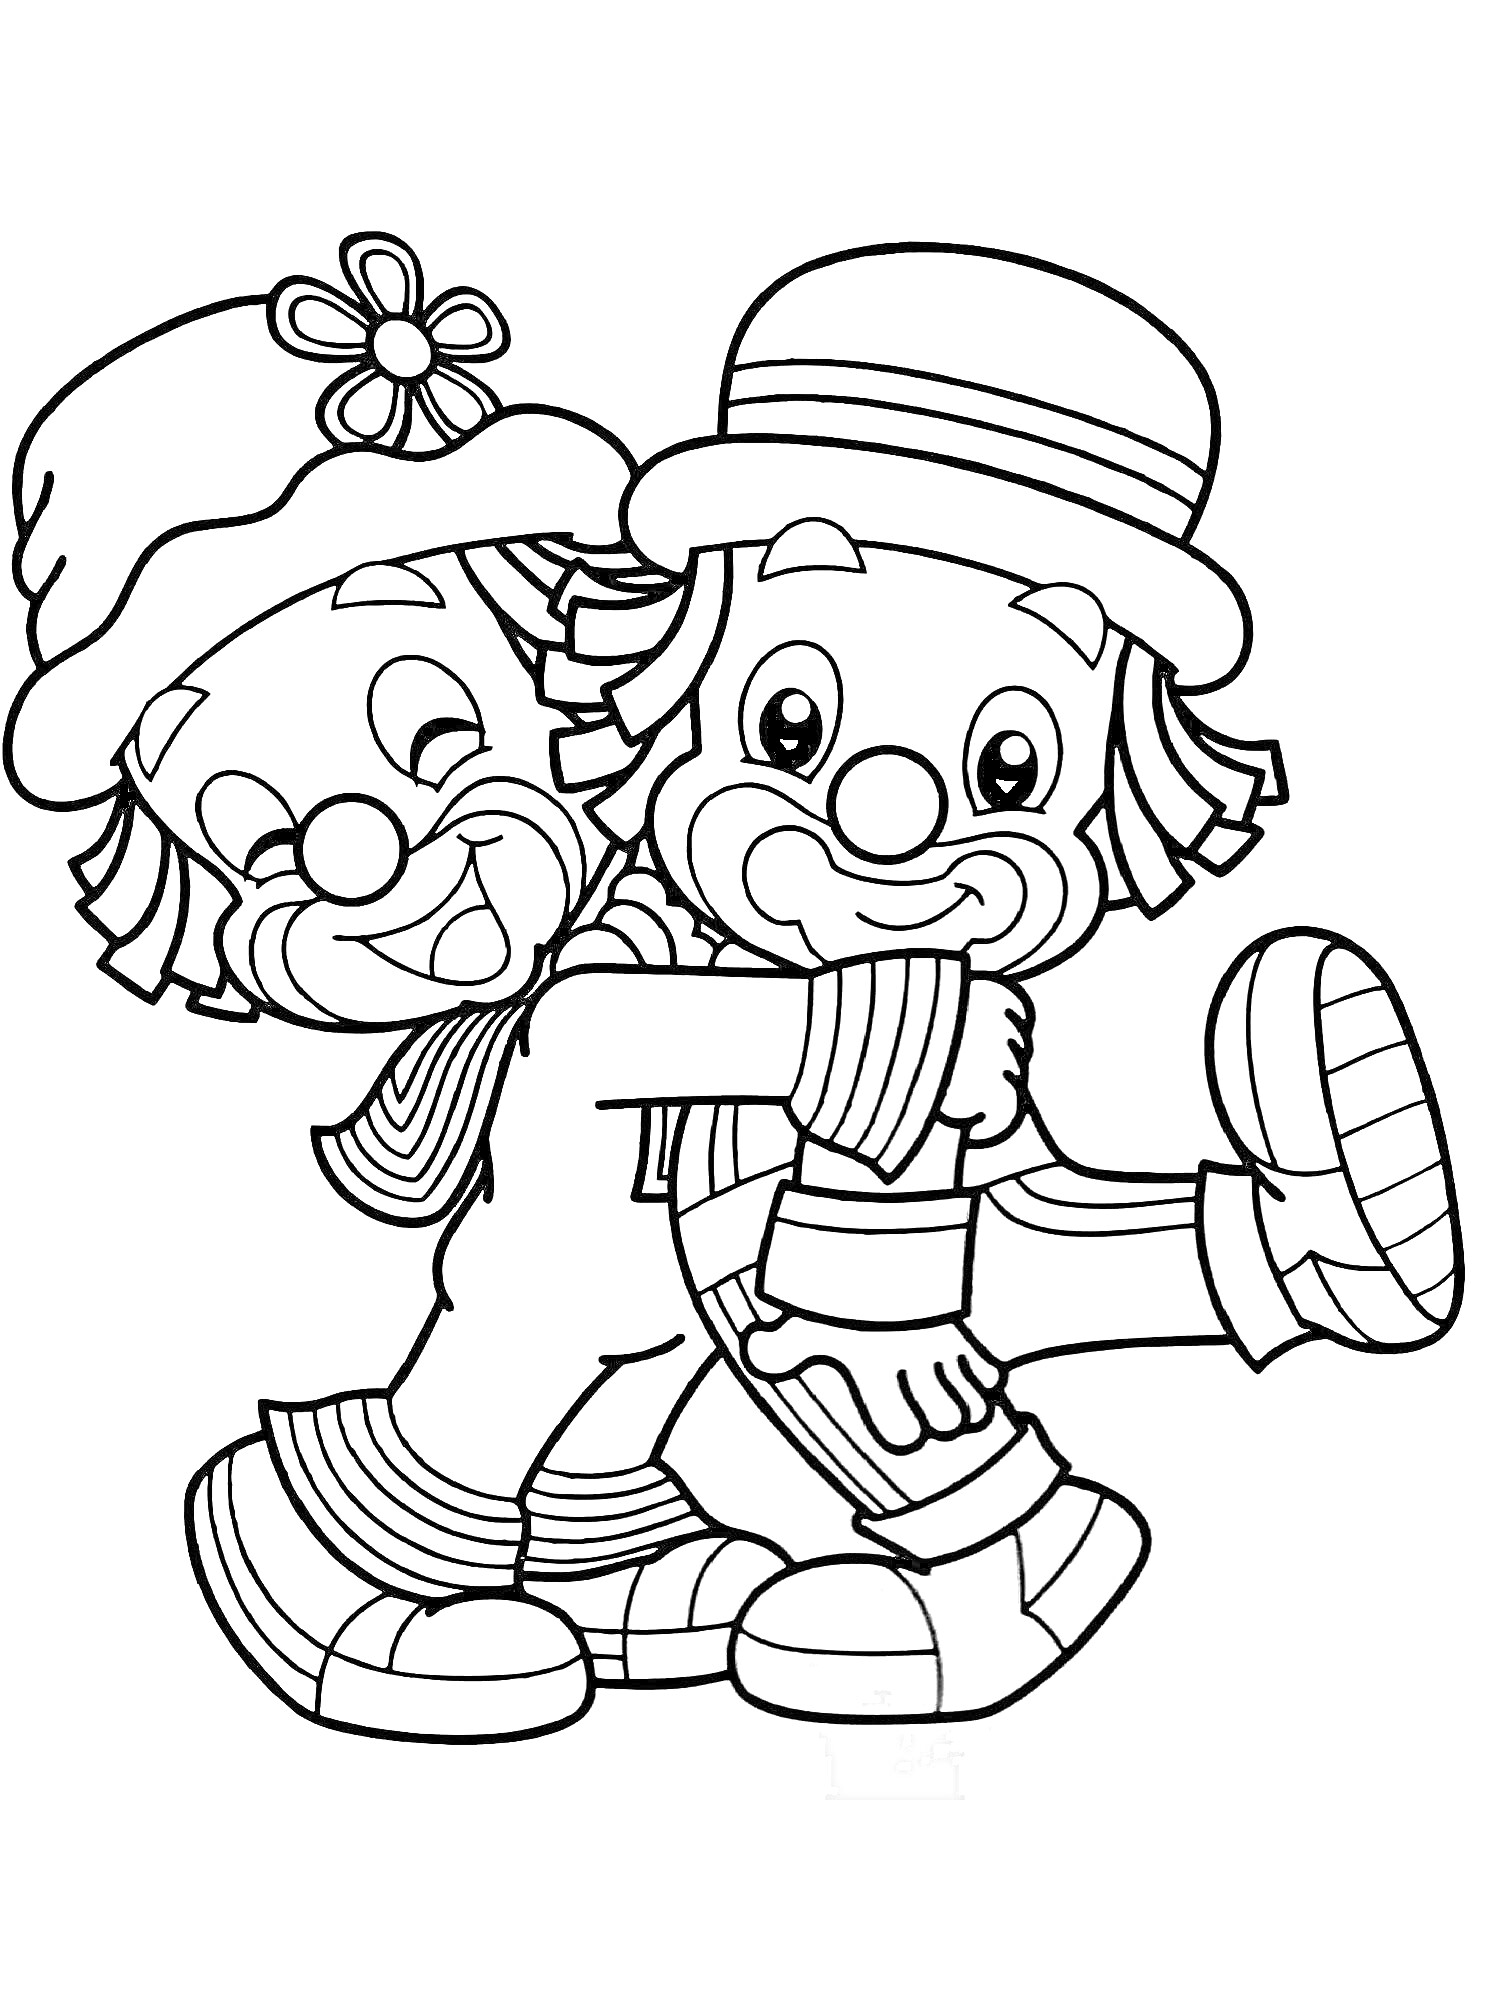 Раскраска Два клоуна в больших ботинках, один с цветочной шляпой, другой с полосатым шарфом